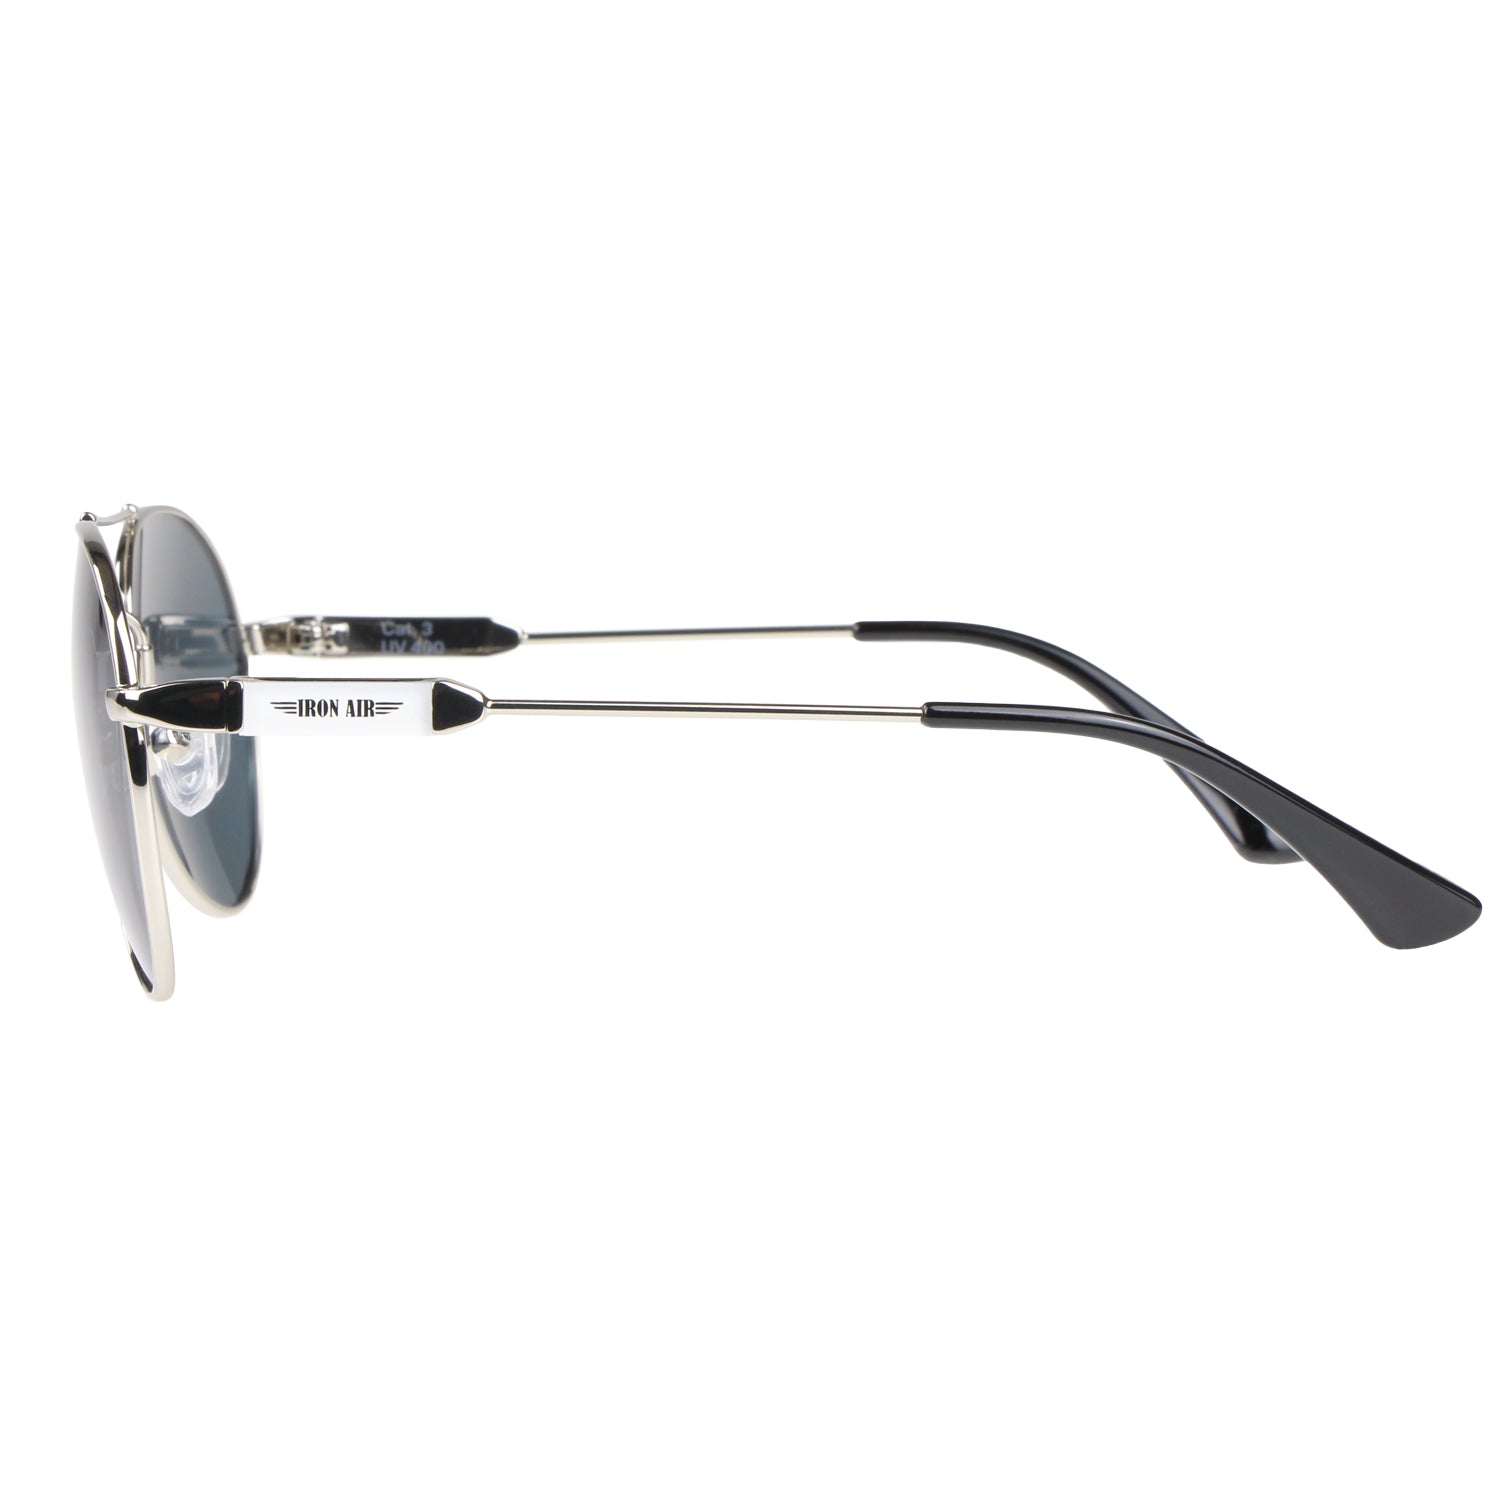 Kinder-Sonnenbrille Iron Air, 6 - 12 Jahre, Piloten-Design , Silber | Graue Gläser